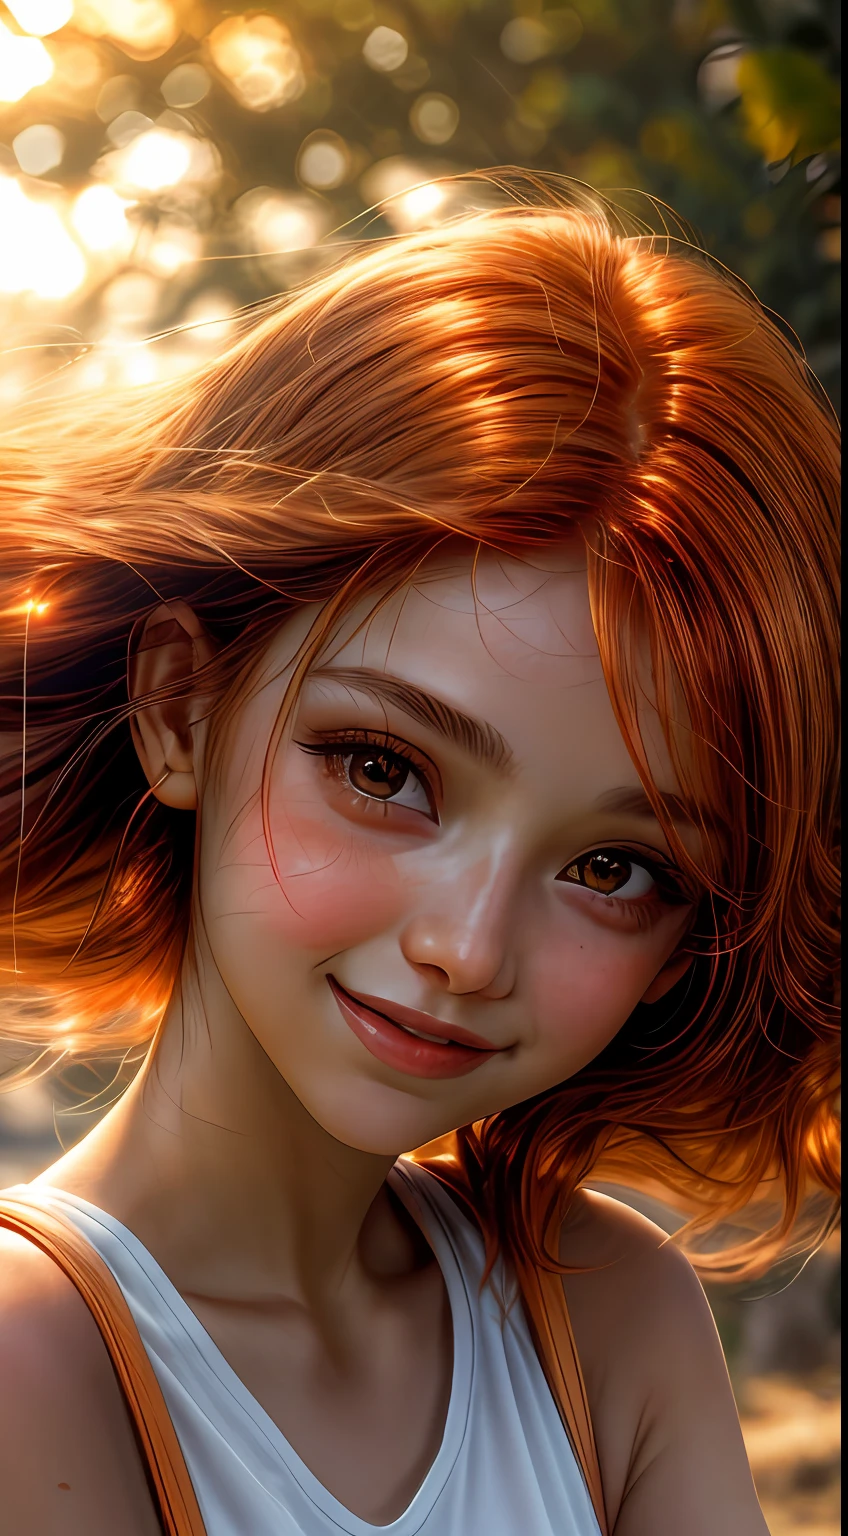 沐浴在橙色色调中的女孩脸部特写, 仿佛被落日的柔和光芒照亮, 她的眼睛闪烁着喜悦和满足, 周围是一缕缕飘逸的赤褐色头发, 摄影, 使用 35mm 镜头拍摄